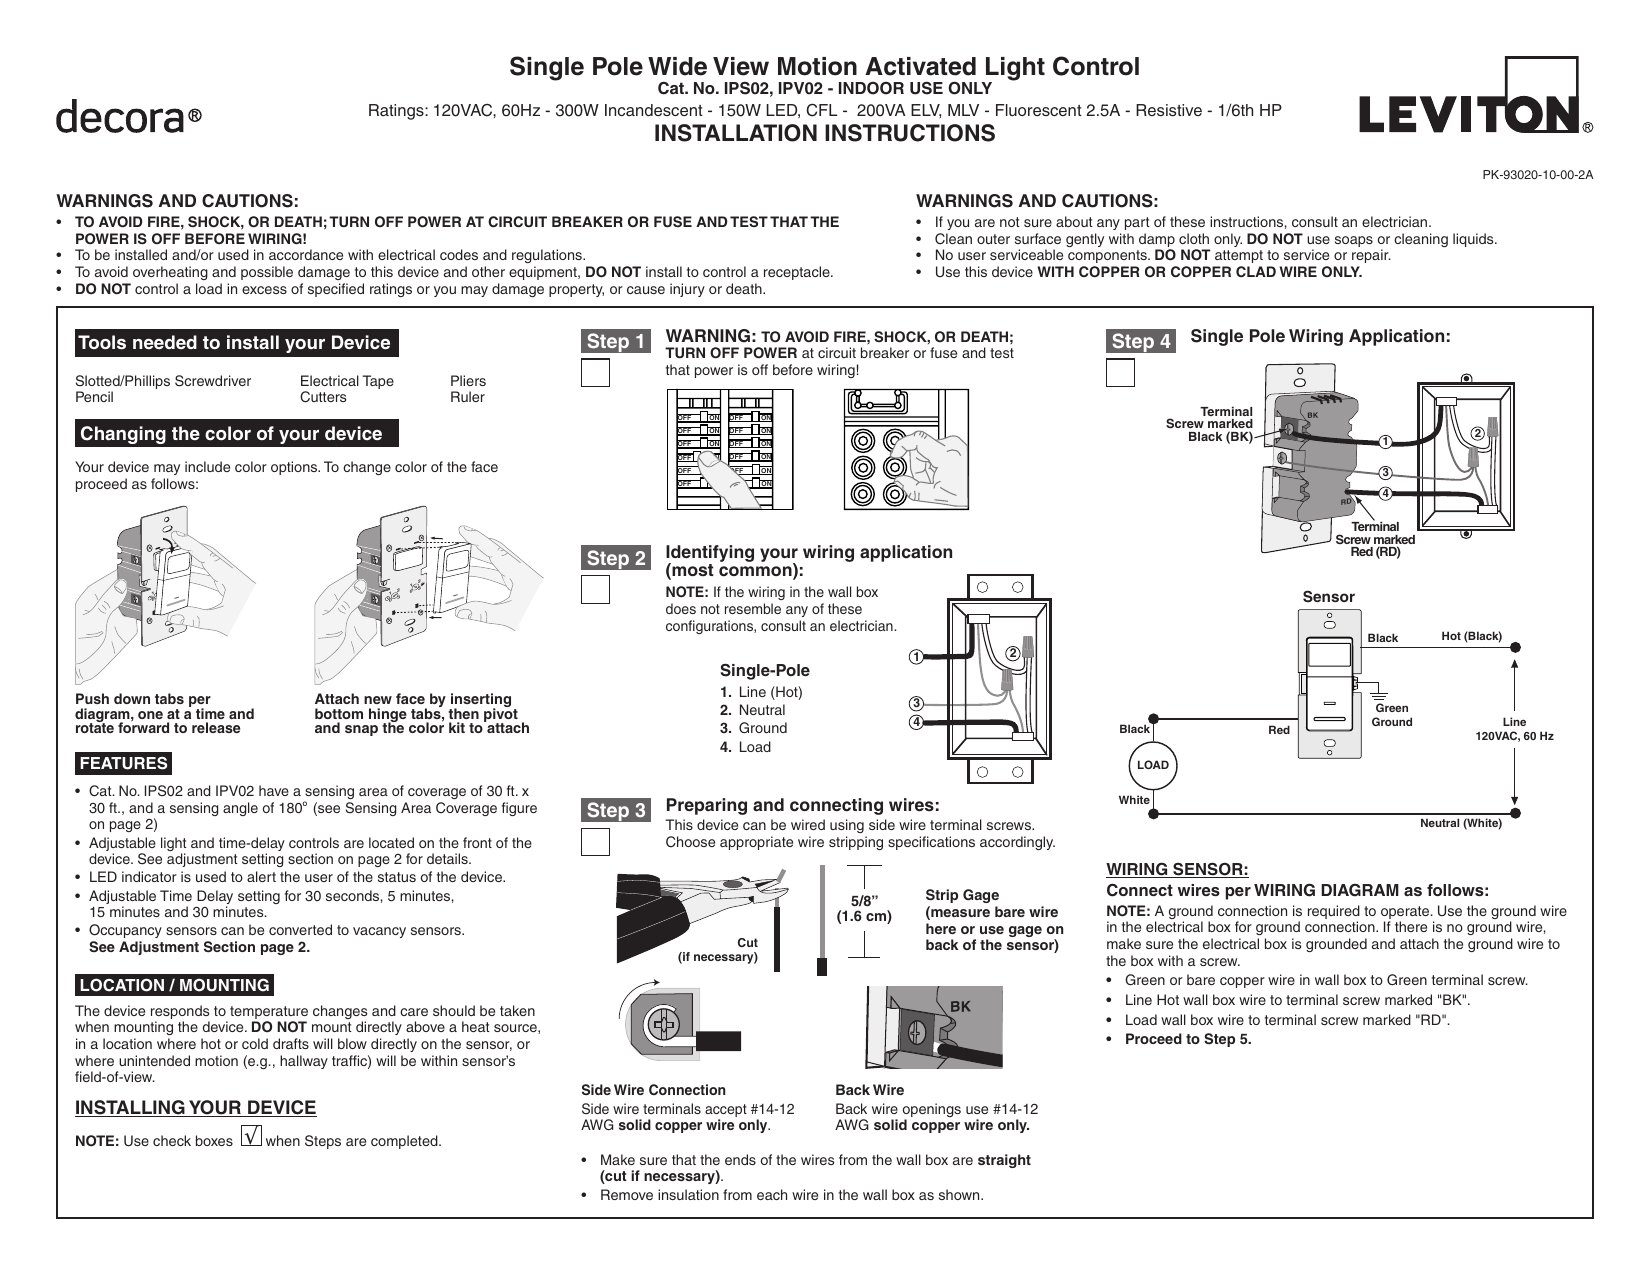 Leviton Ips02 1lb Decora Motion Sensor